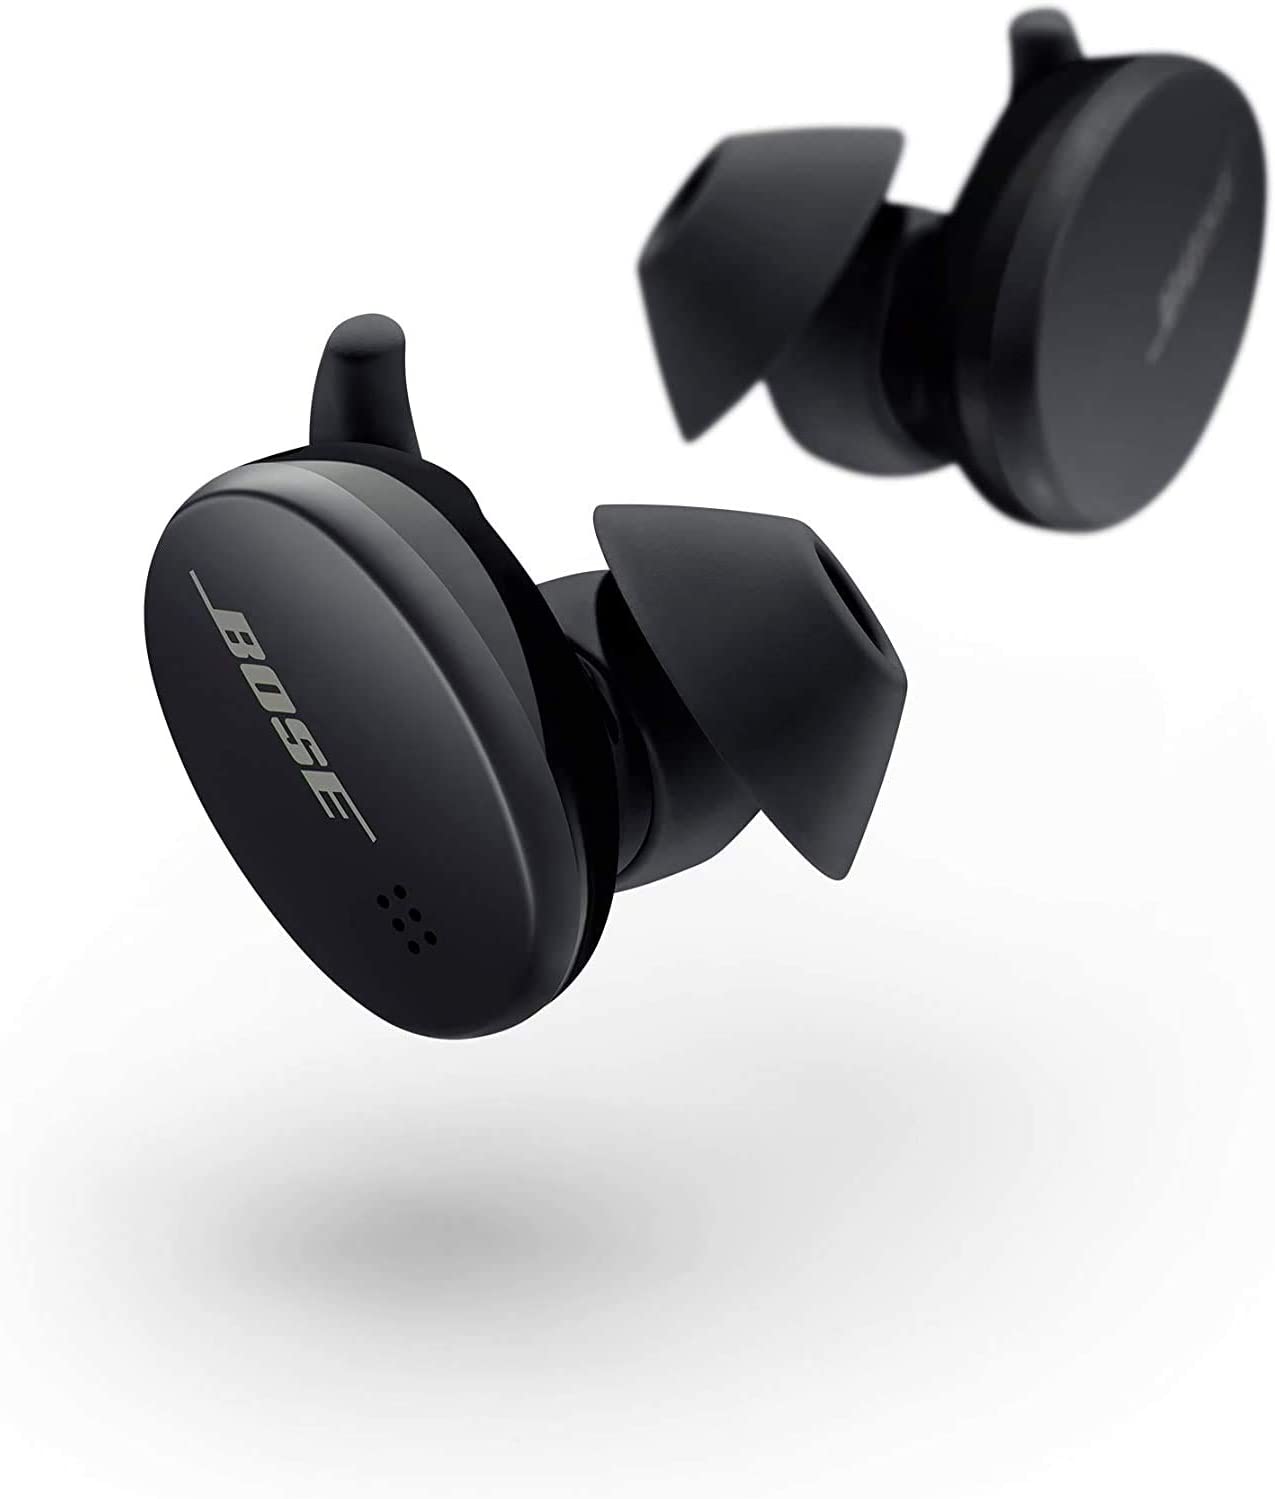 Bose Sports Earbuds True Wireless Earphones Triple Black